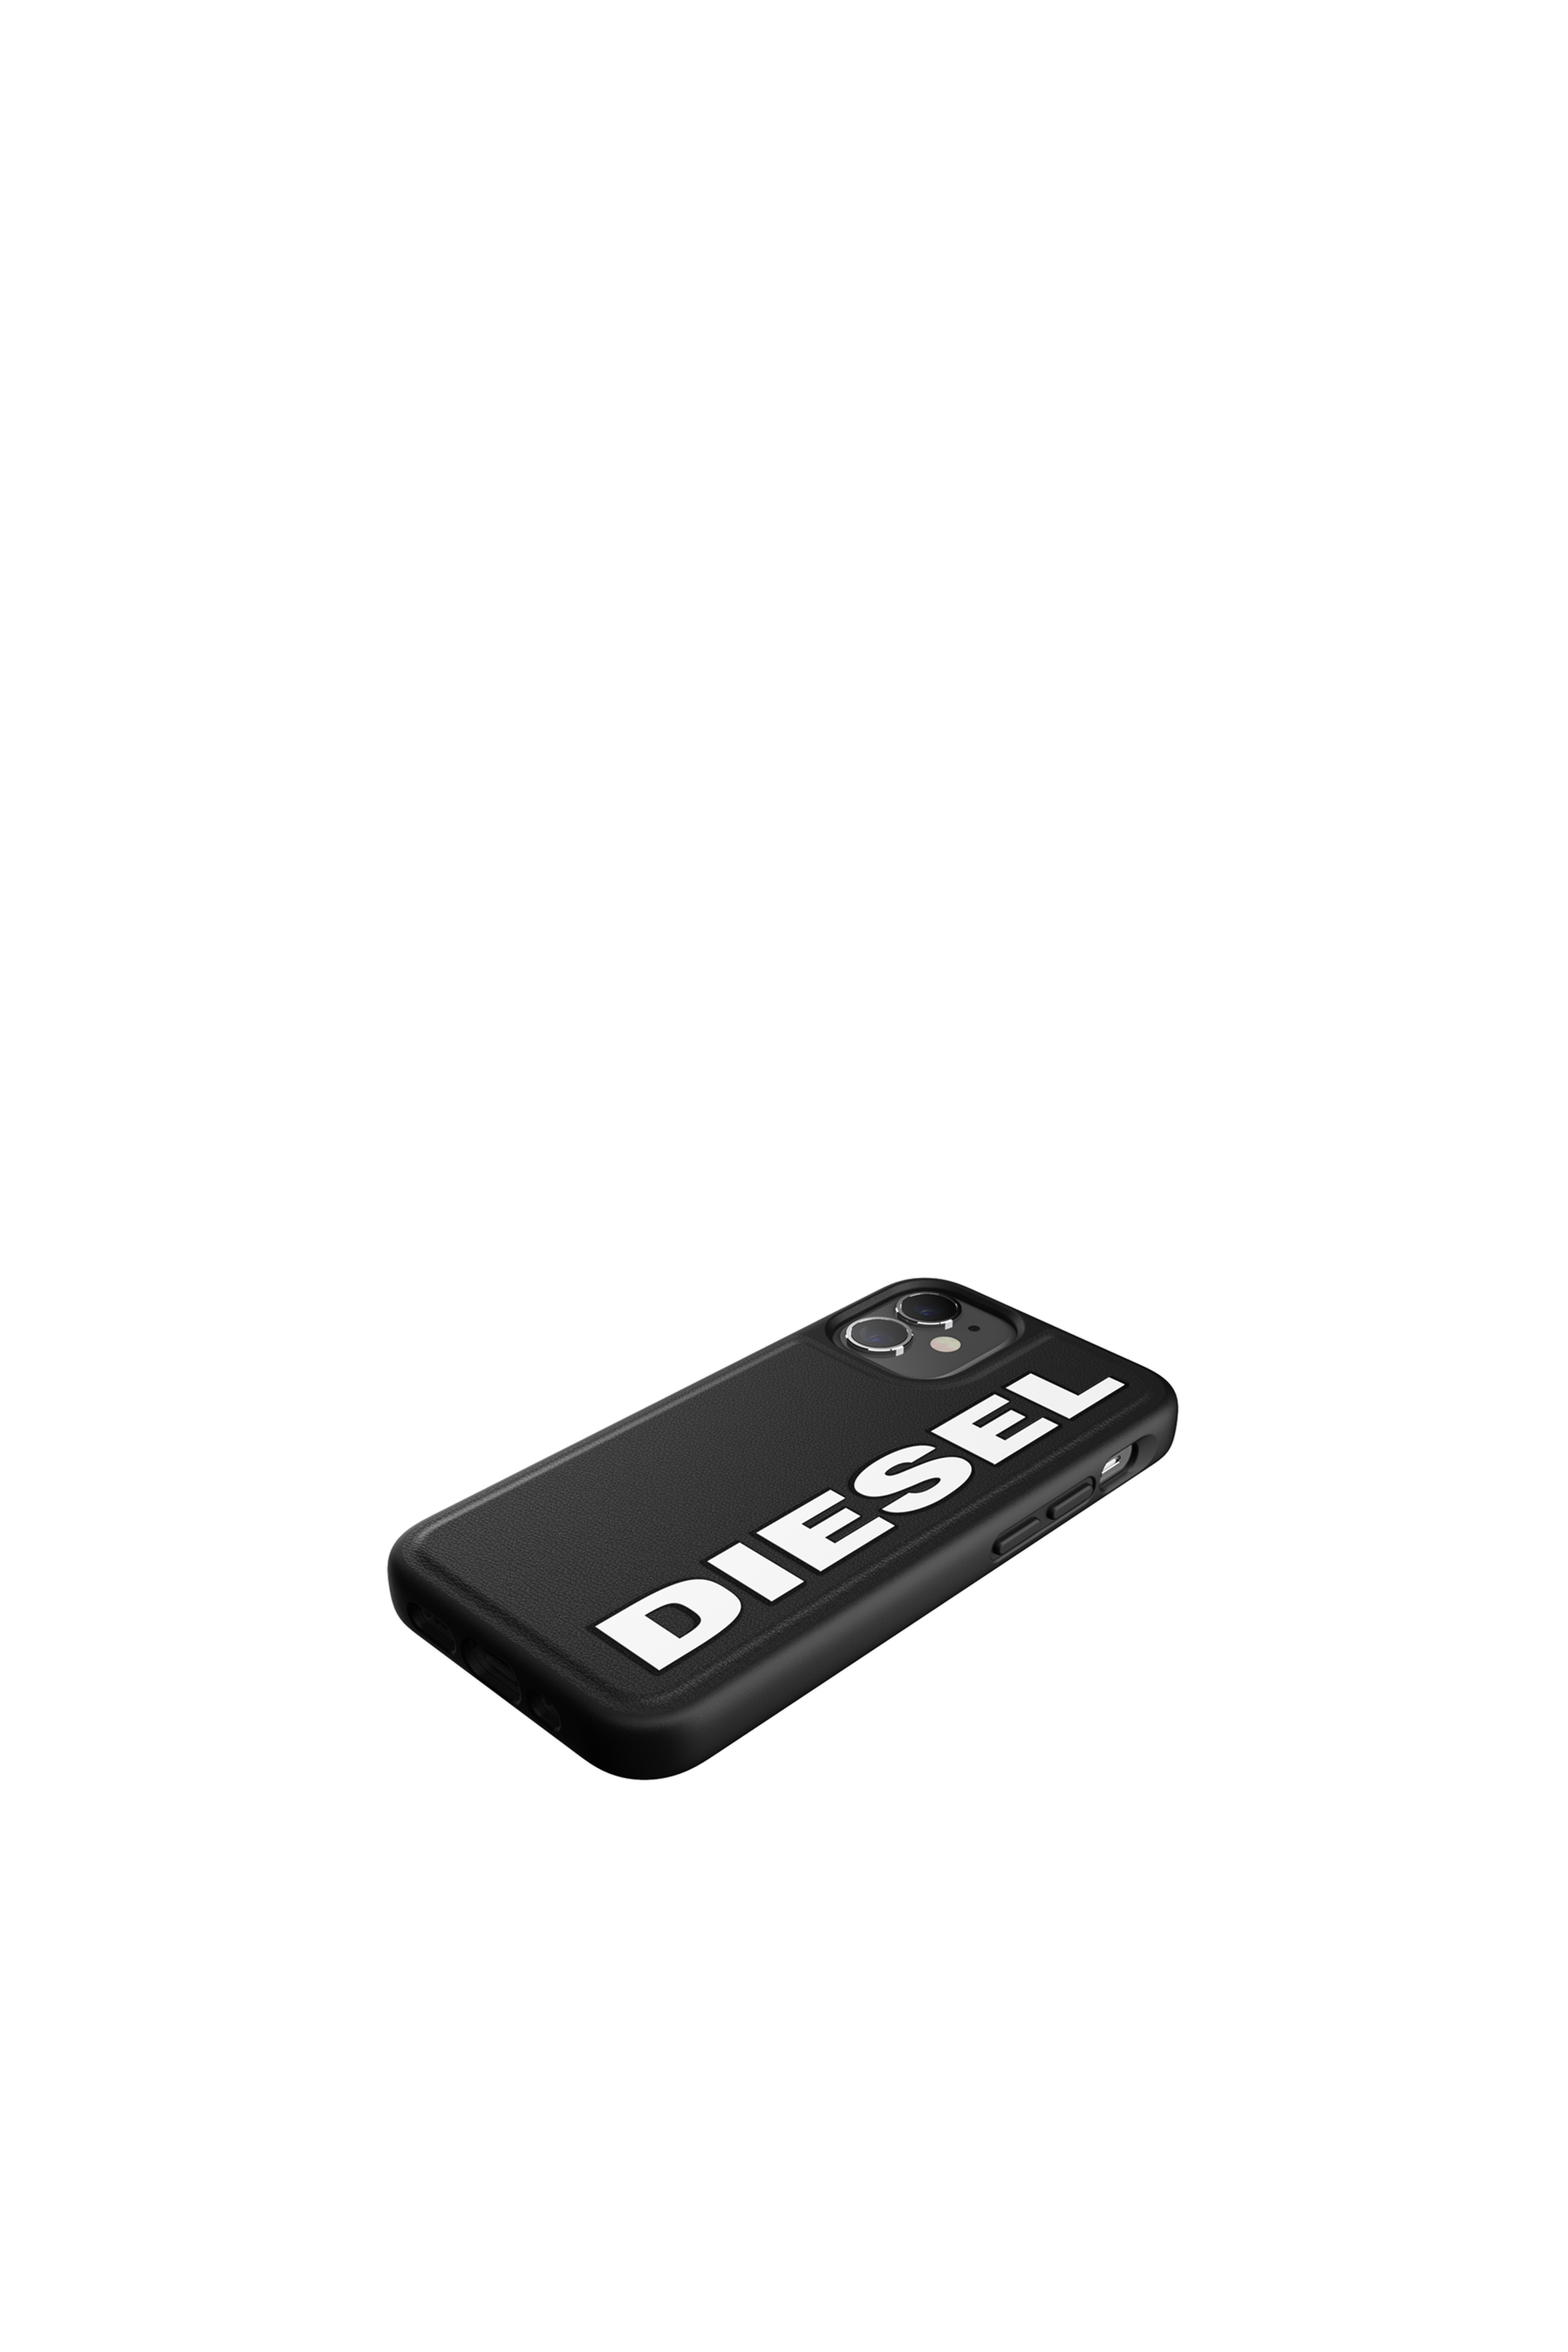 Diesel - 42491, Black - Image 4